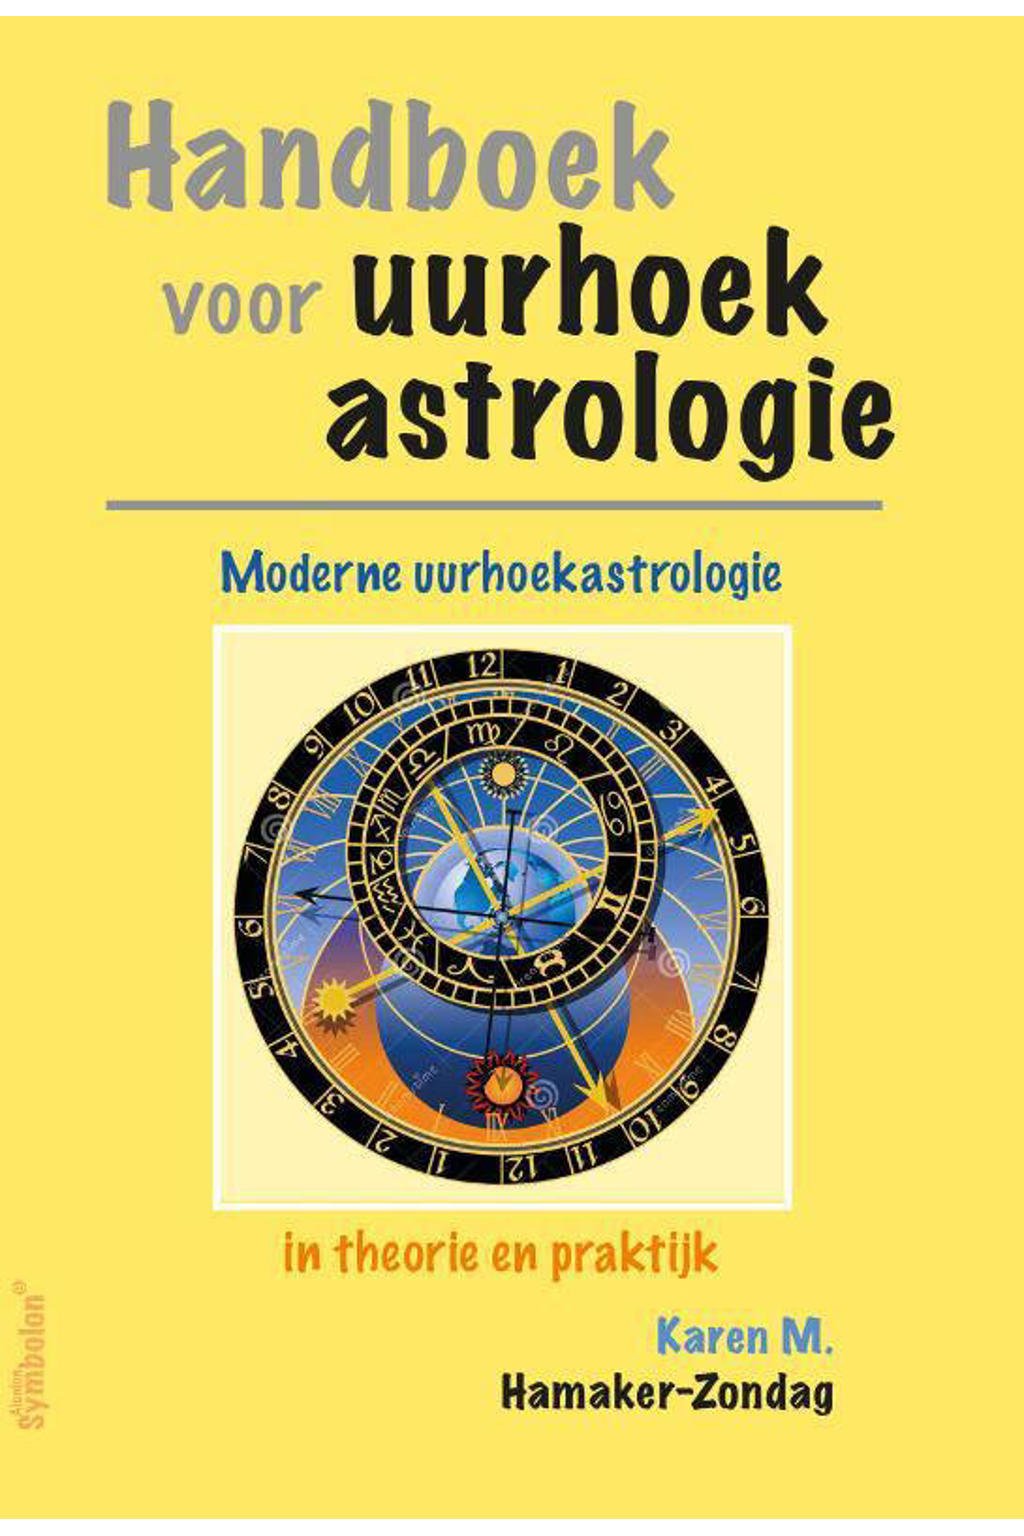 Handboek voor uurhoekastrologie - Karen Hamaker-Zondag